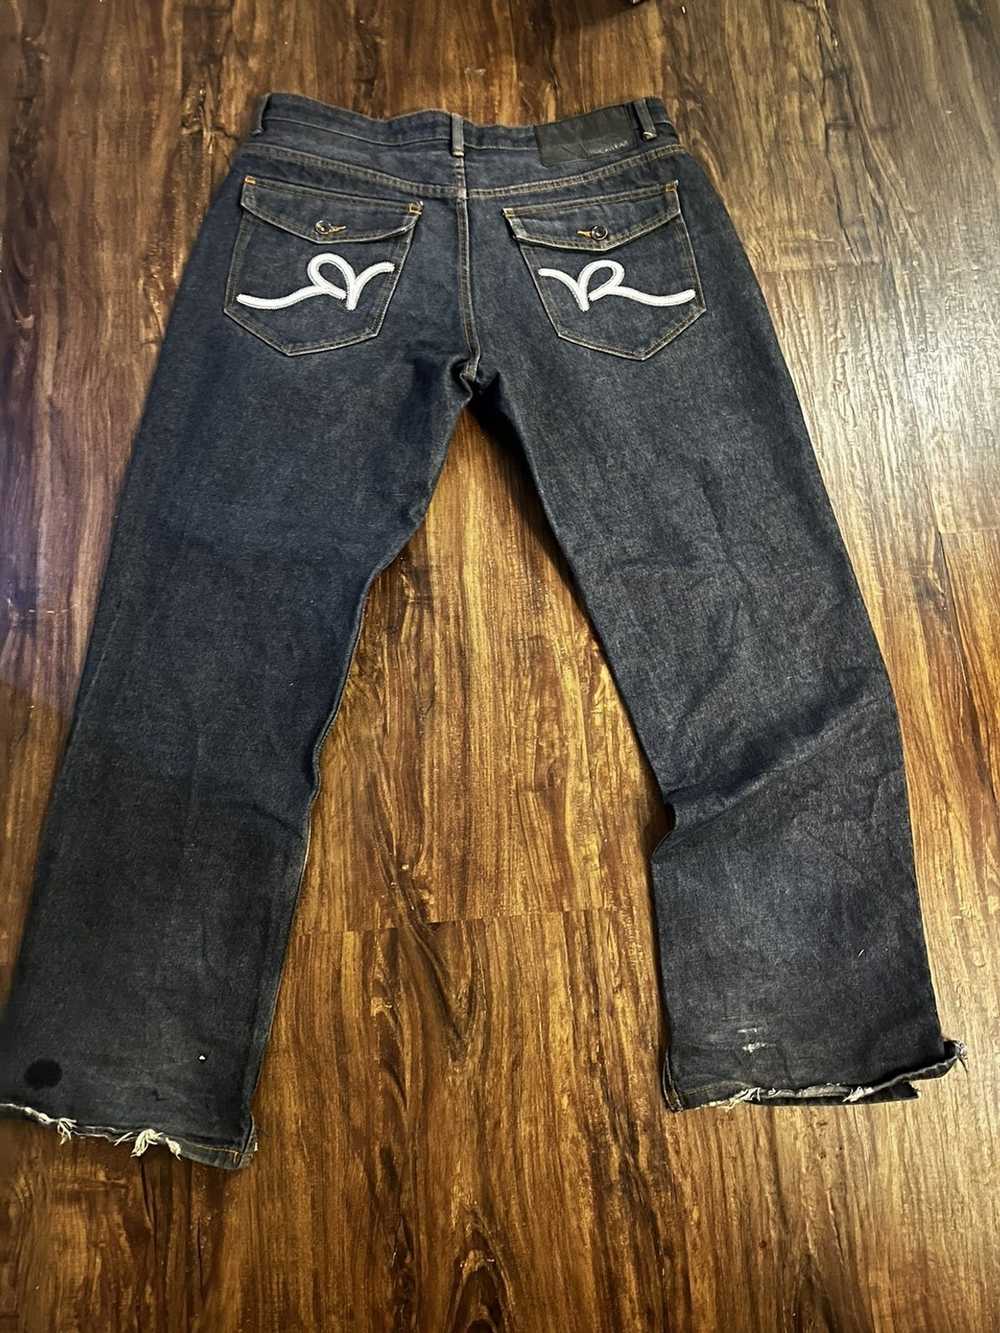 Rocawear Rockawear denim jeans - image 2